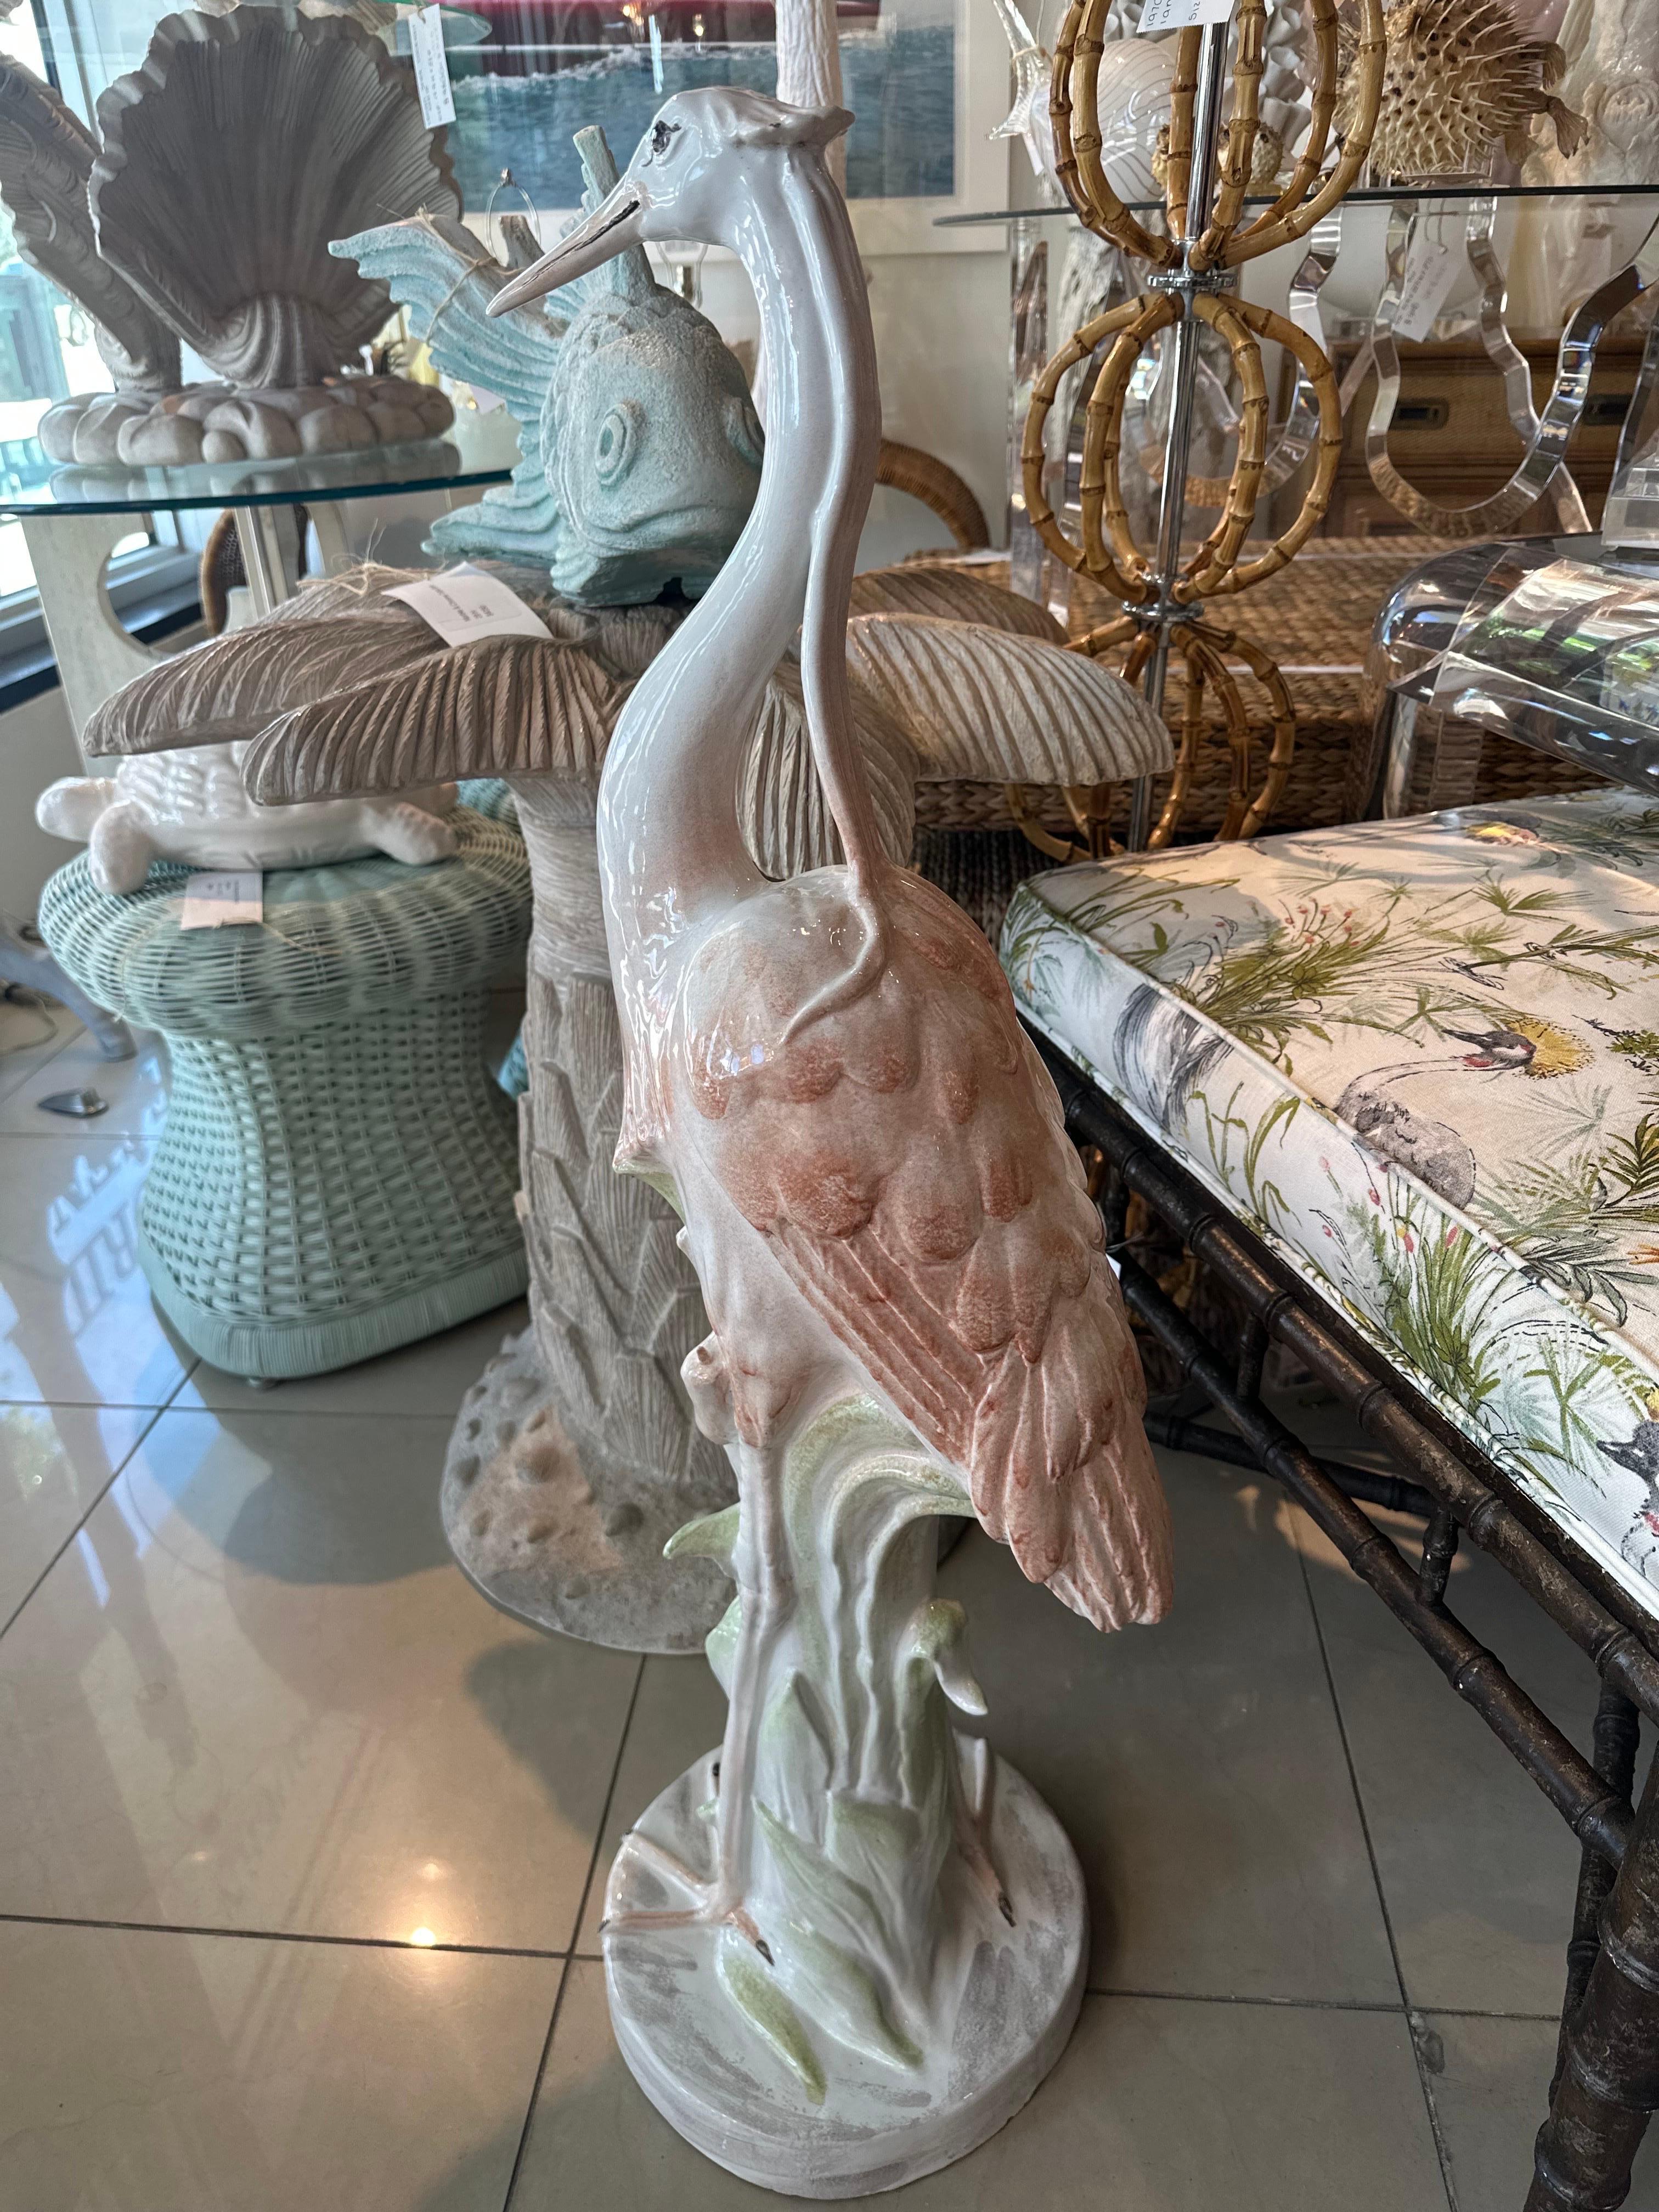 Hübsche Vintage Keramik tropischen rosa Flamingo, Made in Italy. Keine Chips oder Brüche. Schöne Farben! Perfekt für den tropischen Insel- und Palm Beach-Look. Abmessungen: 39 H x 12 T. Bitte lassen Sie mich wissen, wenn Sie ein zusätzliches